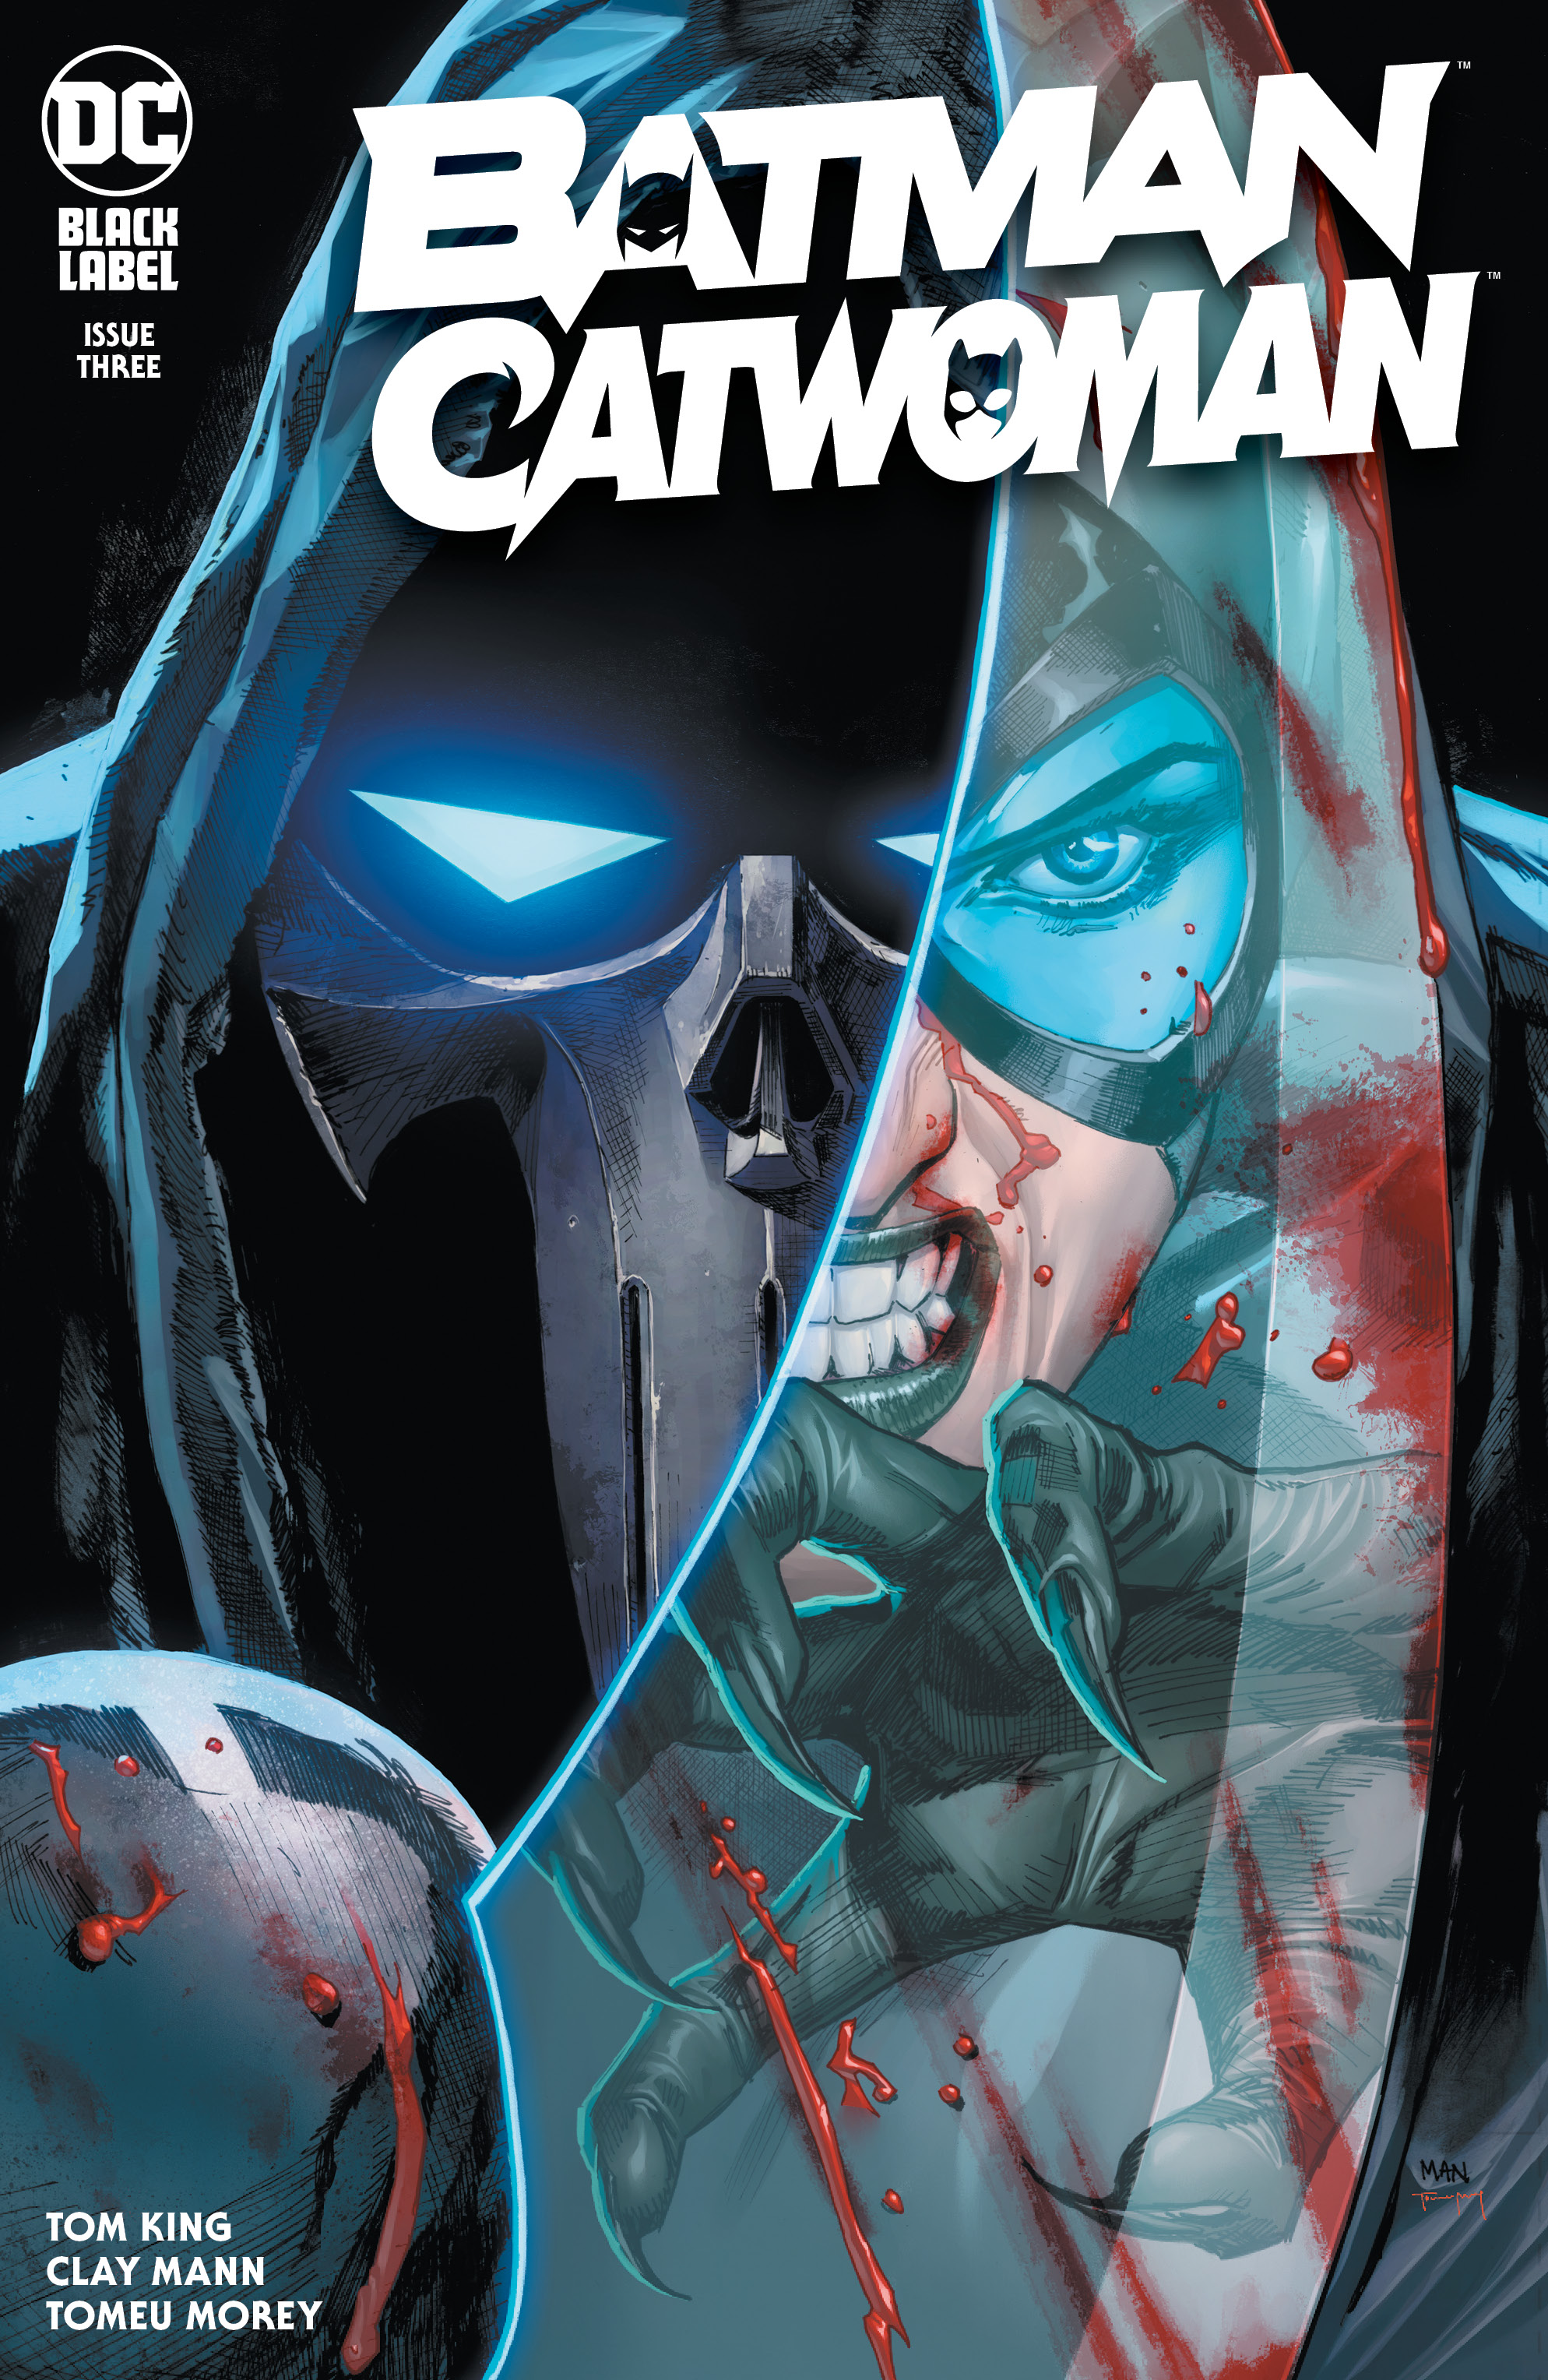 Batman Catwoman #3 (Of 12) Cover A Clay Mann